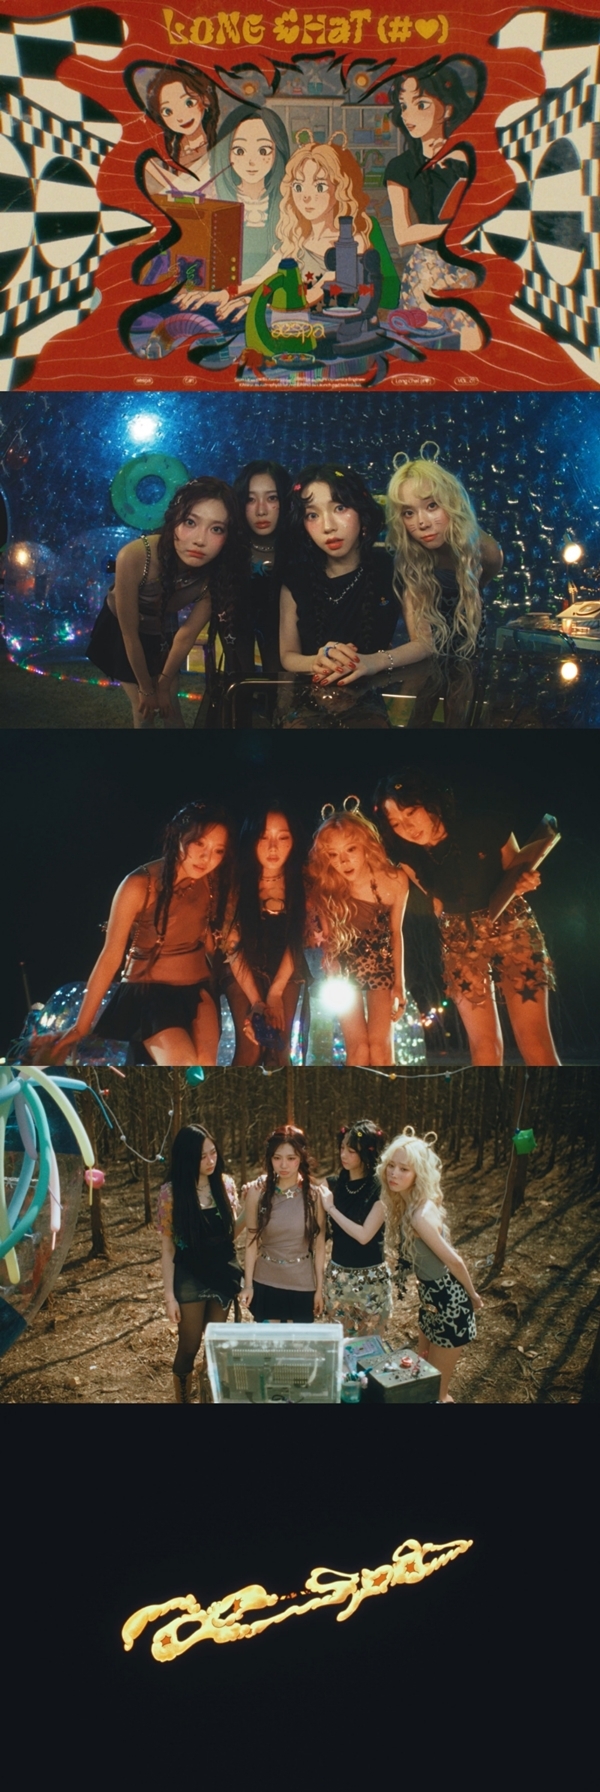 에스파(aespa, 에스엠엔터테인먼트 소속)의 첫 정규 앨범 수록곡 ‘Long Chat (#♥)’ 트랙 비디오가 공개되어 화제다. / 사진 = SM엔터테인먼트